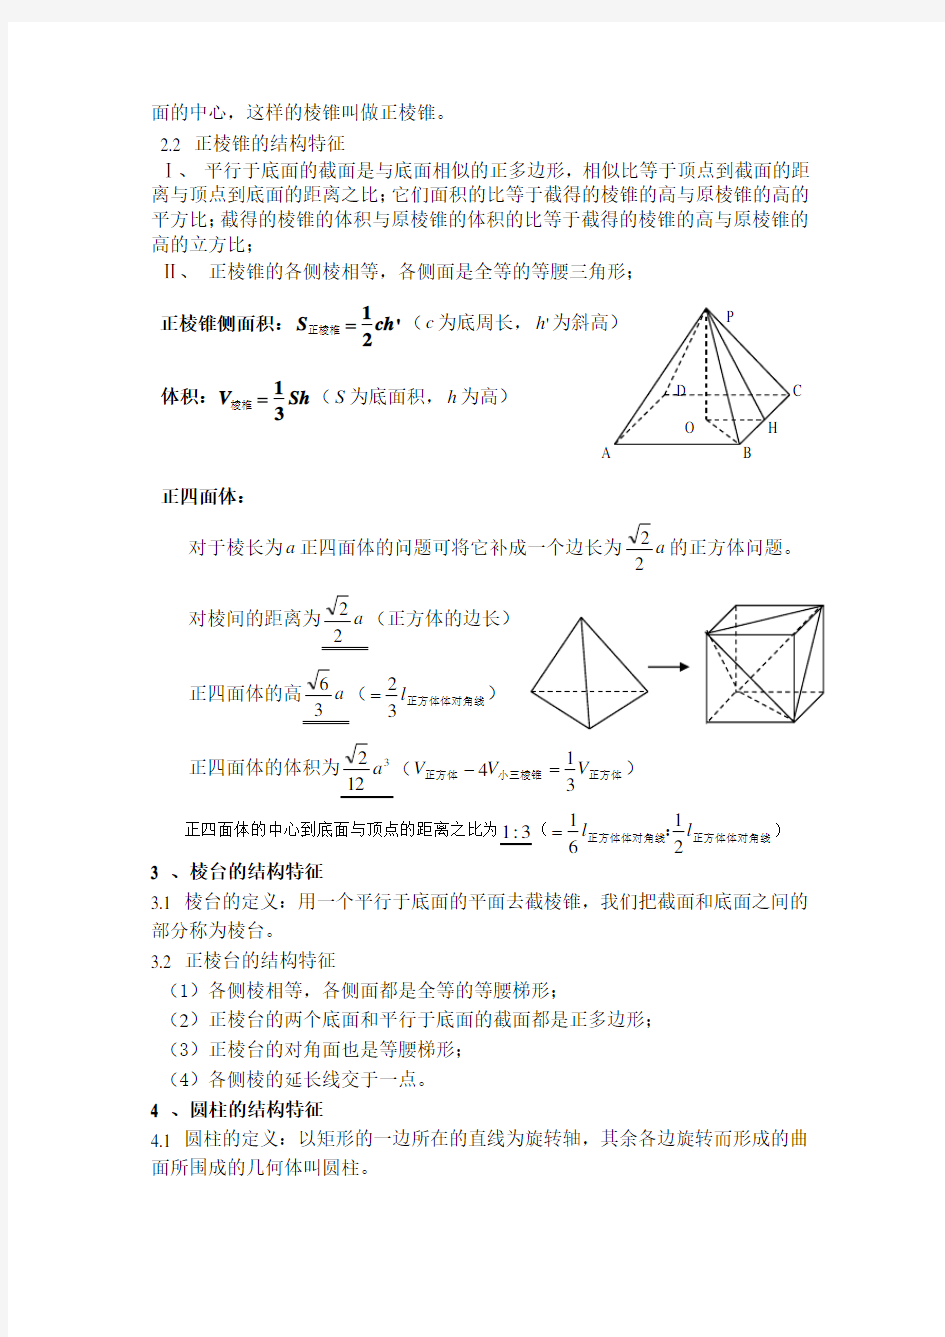 高考立体几何知识点总结(详细)。